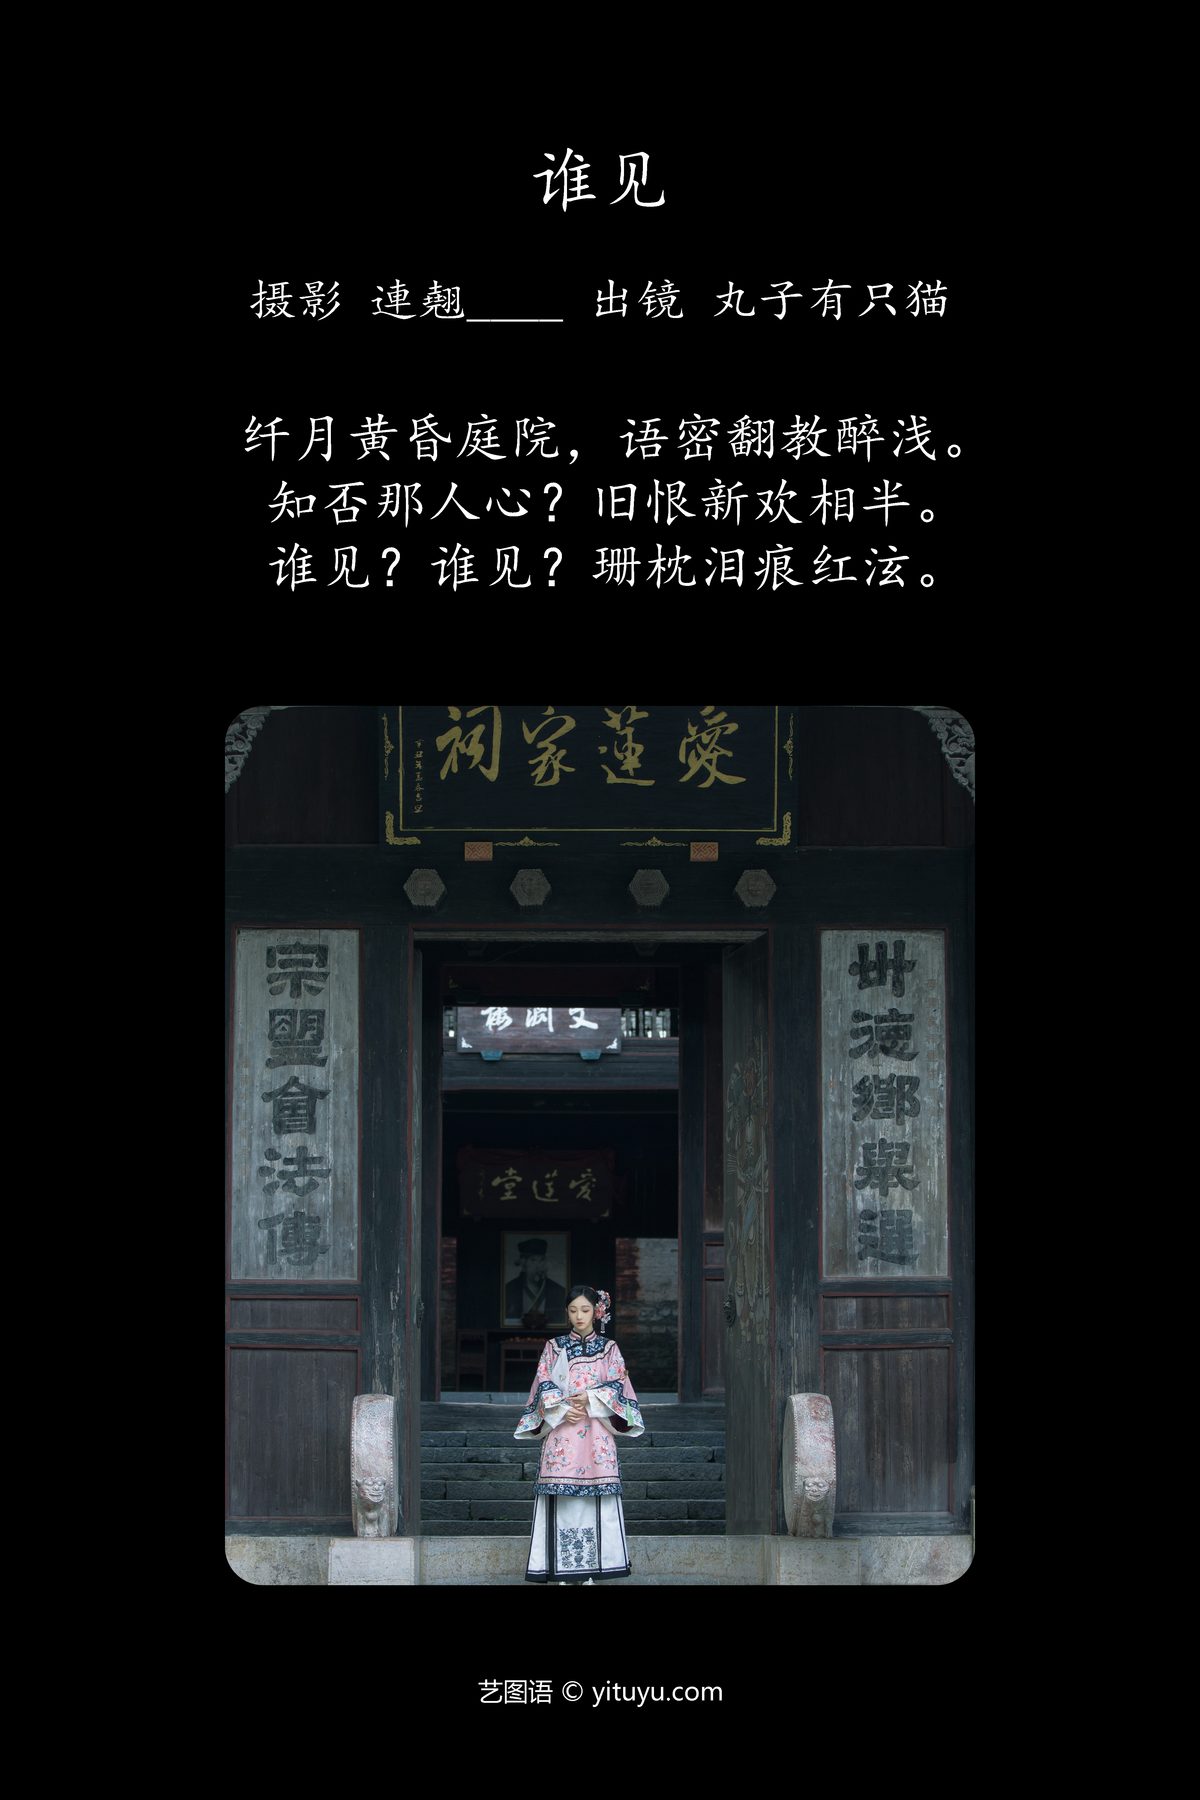 YiTuYu艺图语 Vol 4874 Wan Zi You Zhi Mao 0001 1381772578.jpg